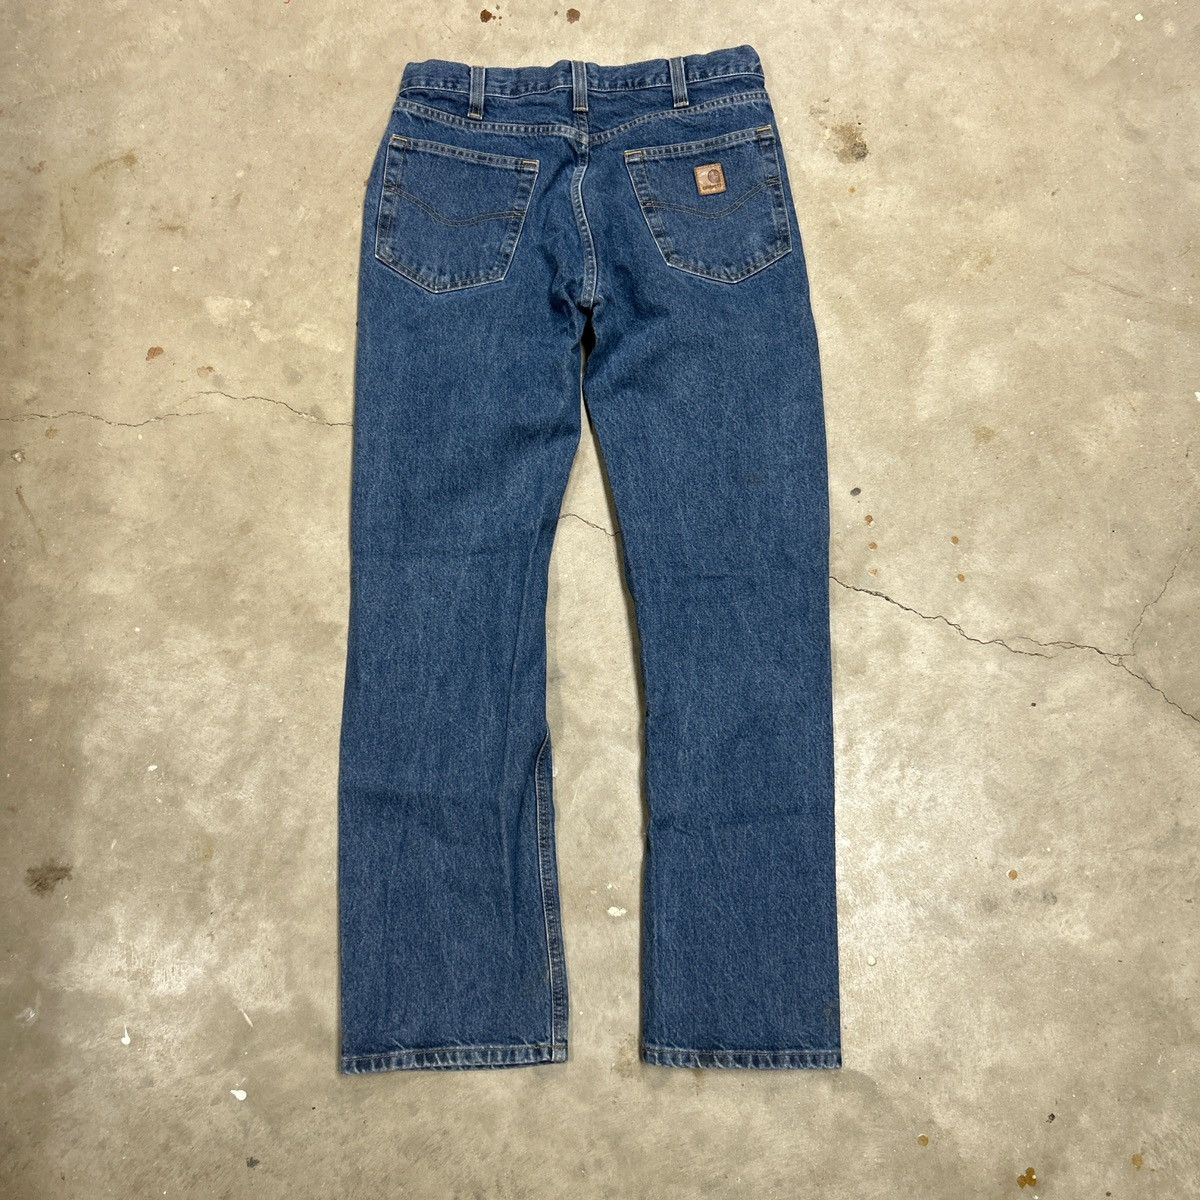 Vintage Carhartt Jeans Size US 32 / EU 48 - 7 Thumbnail